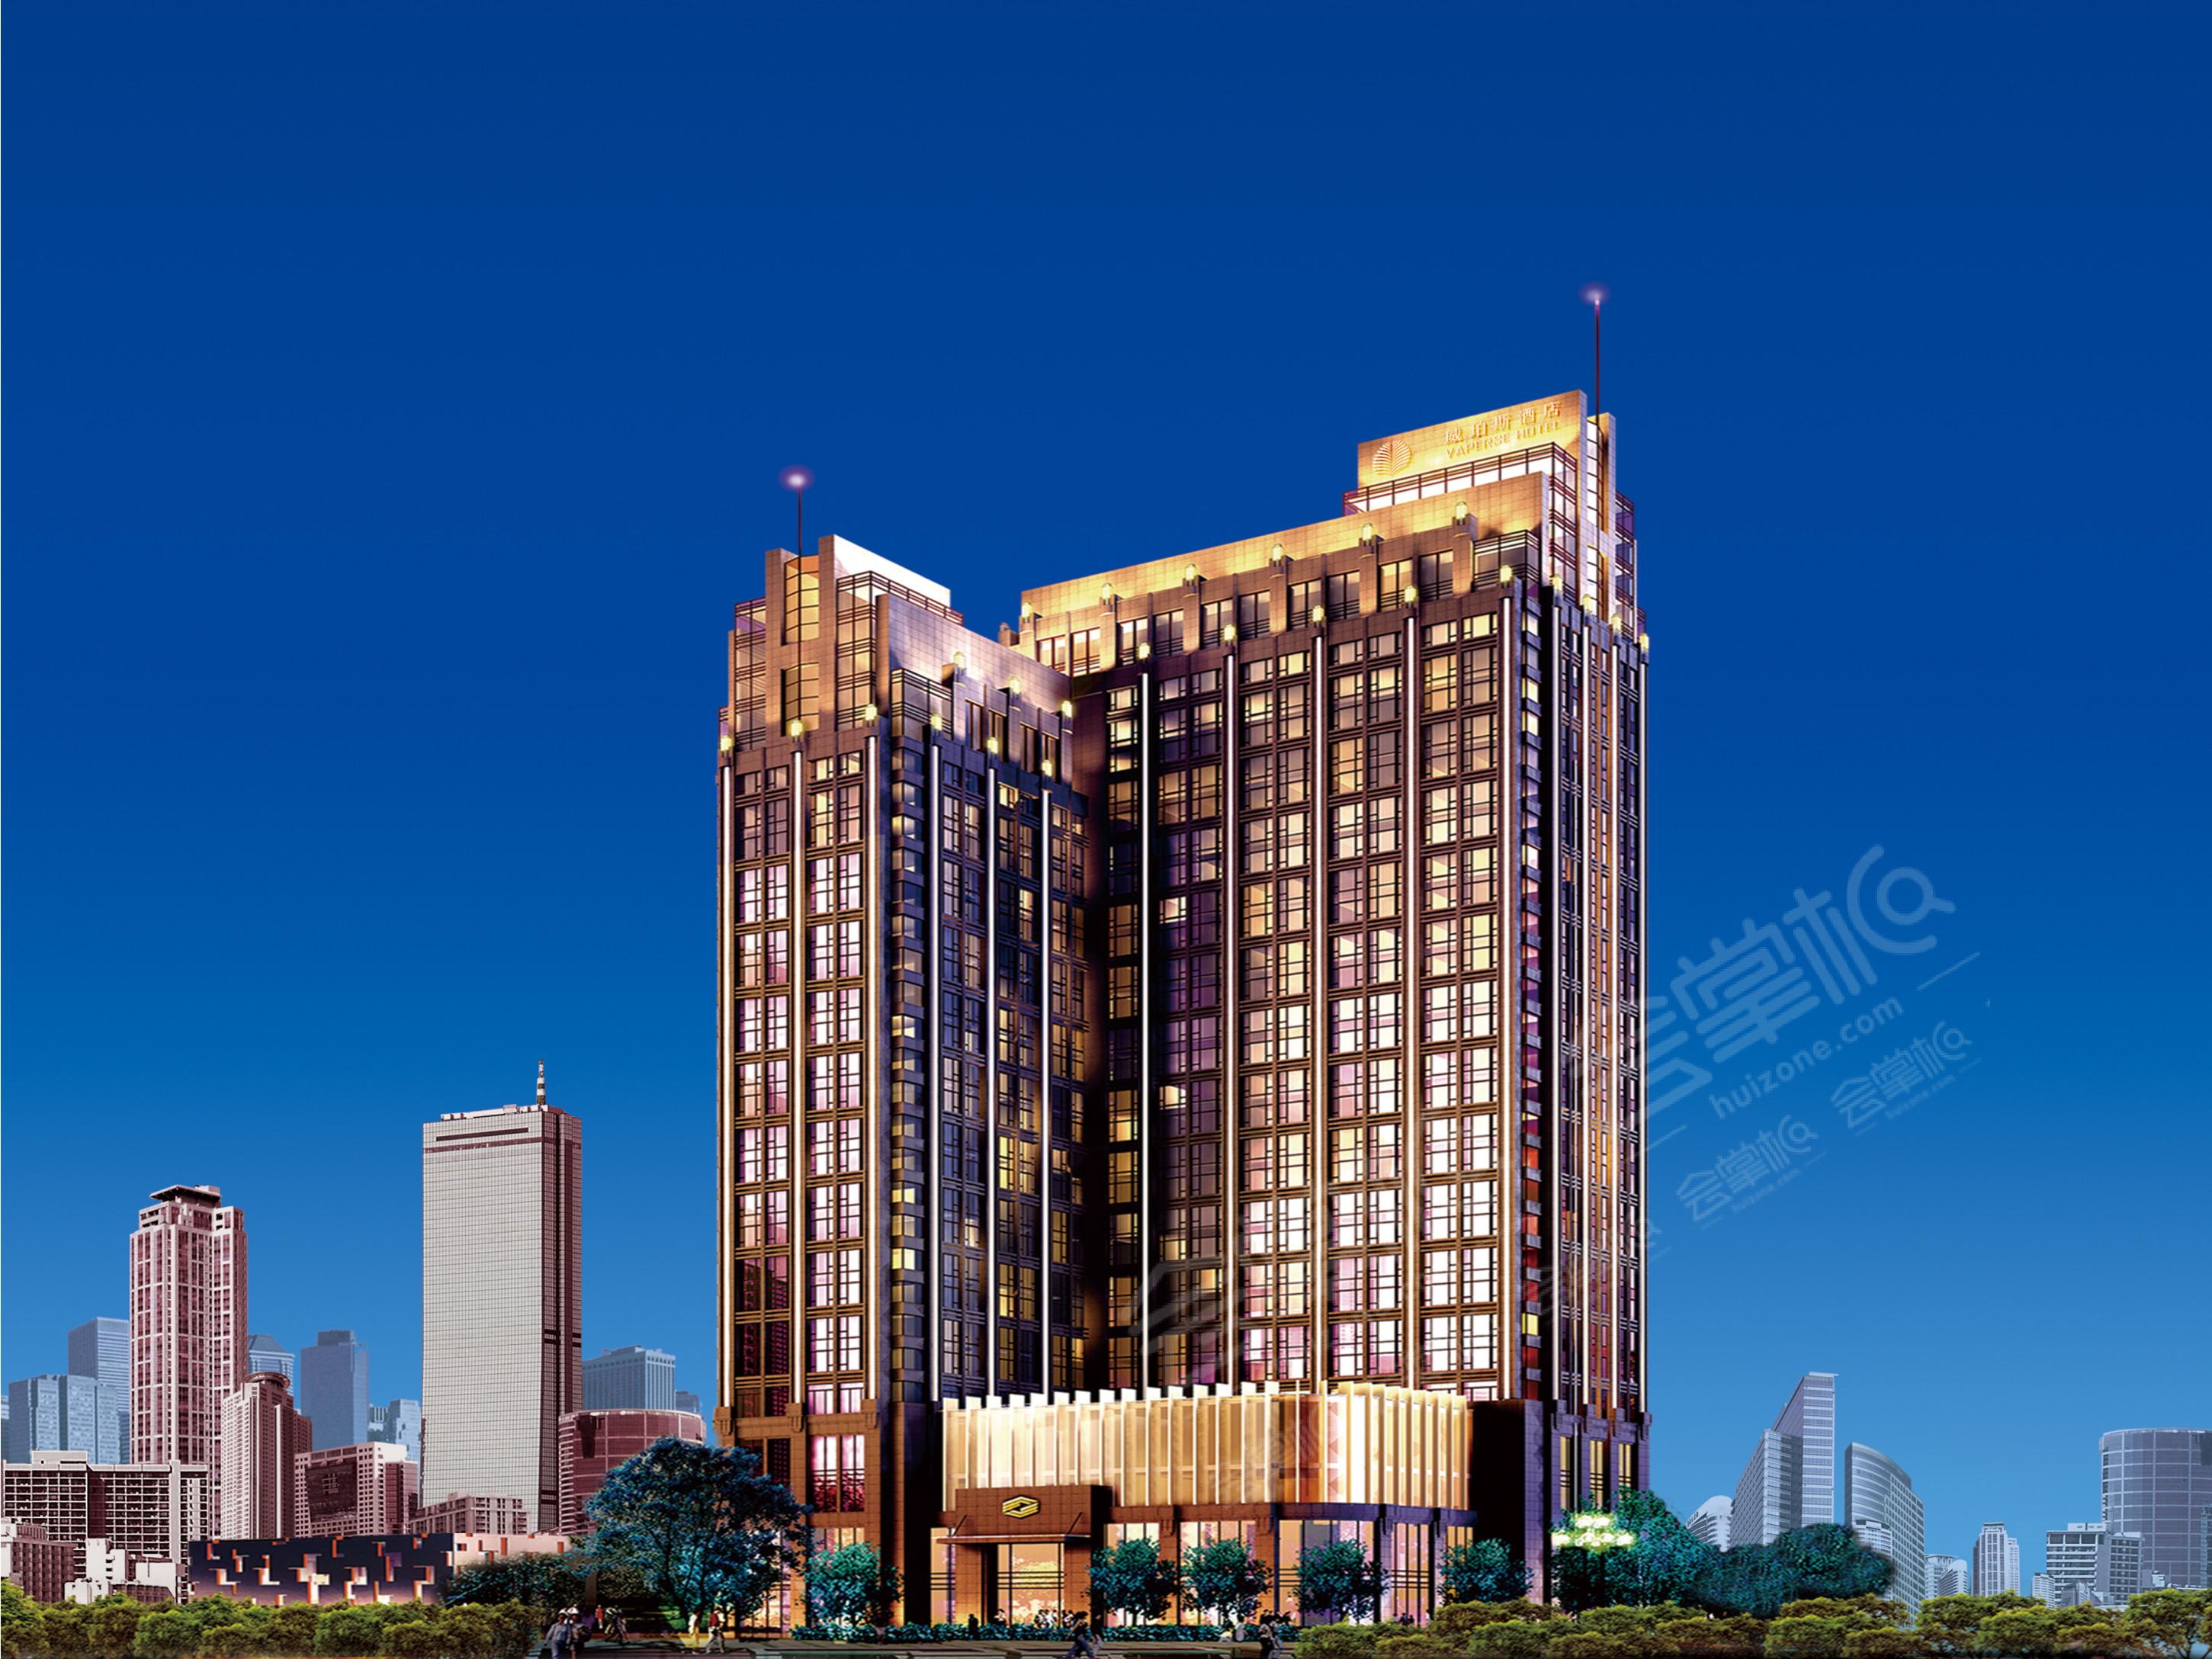 广州五星级酒店最大容纳240人的会议场地|广州威珀斯酒店的价格与联系方式